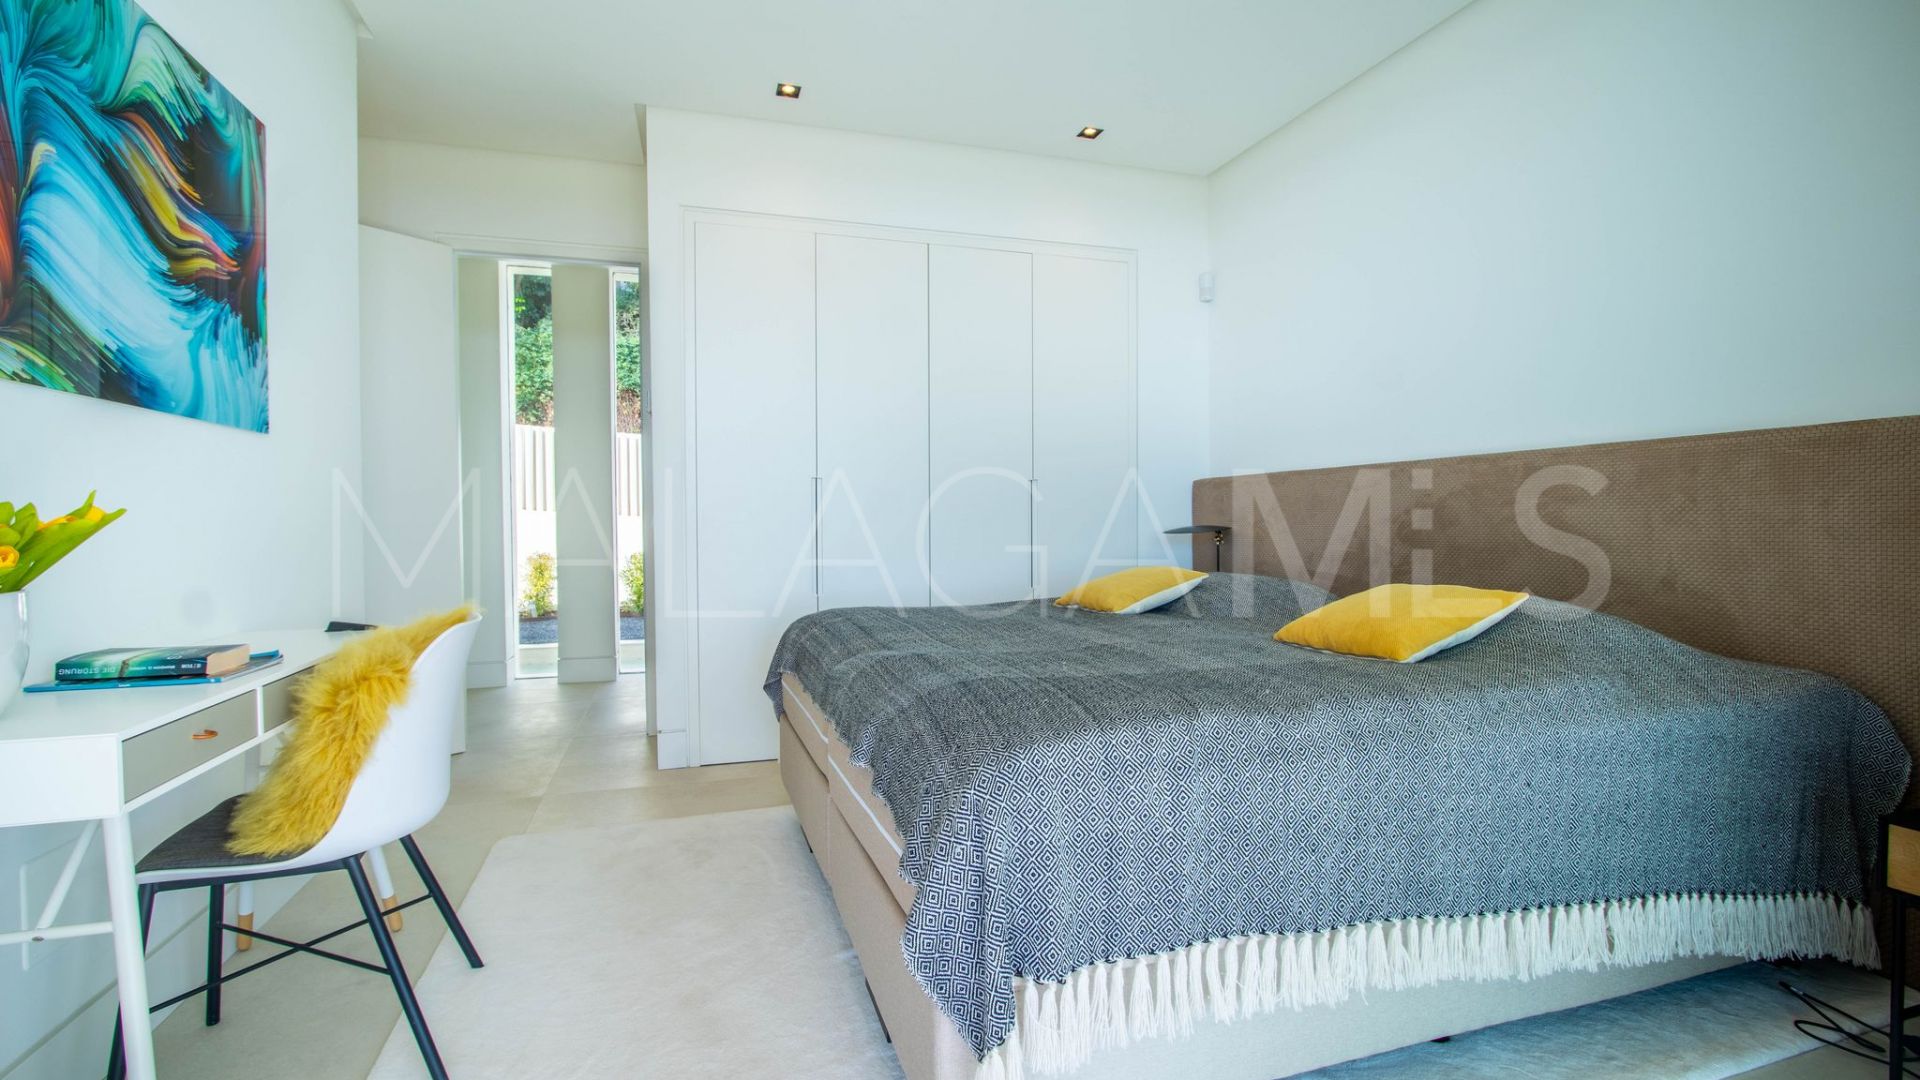 5 bedrooms villa in La Alqueria for sale